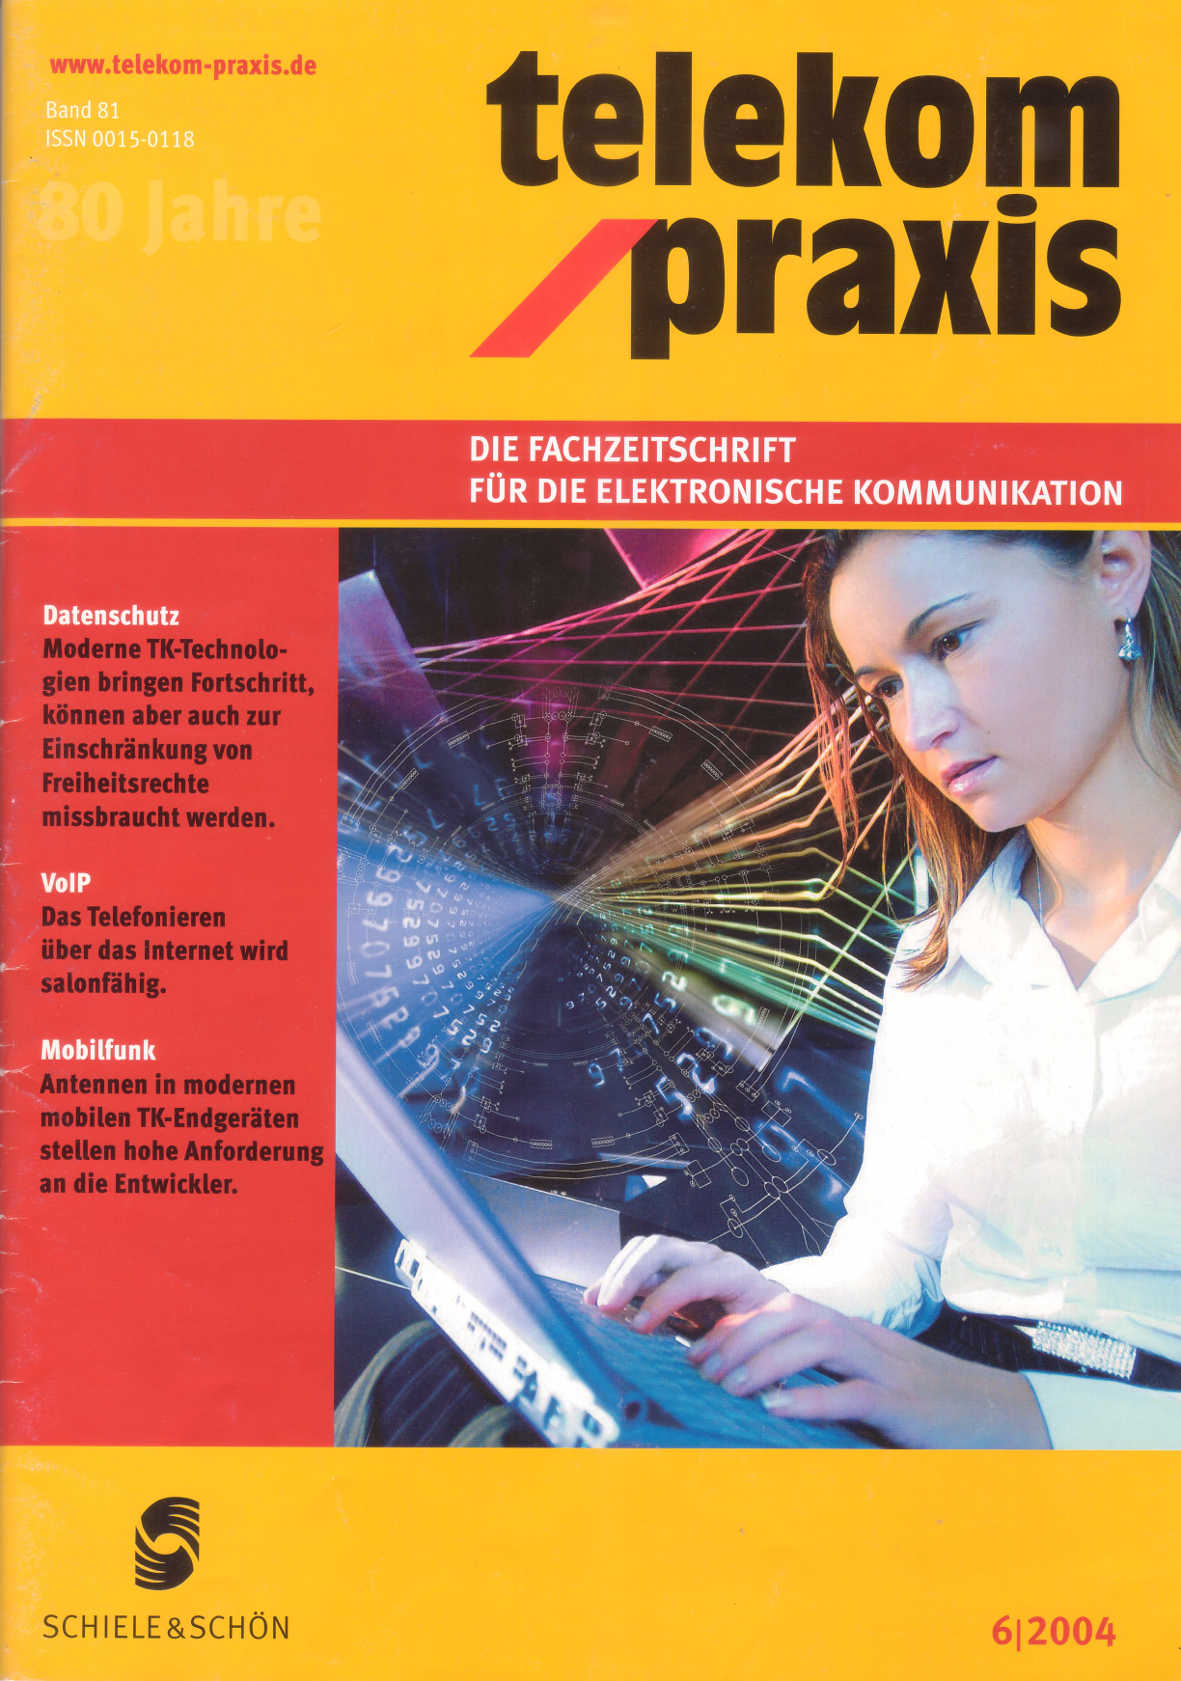 telekom praxis, Ausgabe 6/2004, Fachverlag Schiele und Schön, Berlin, ISSN: 0015-0118